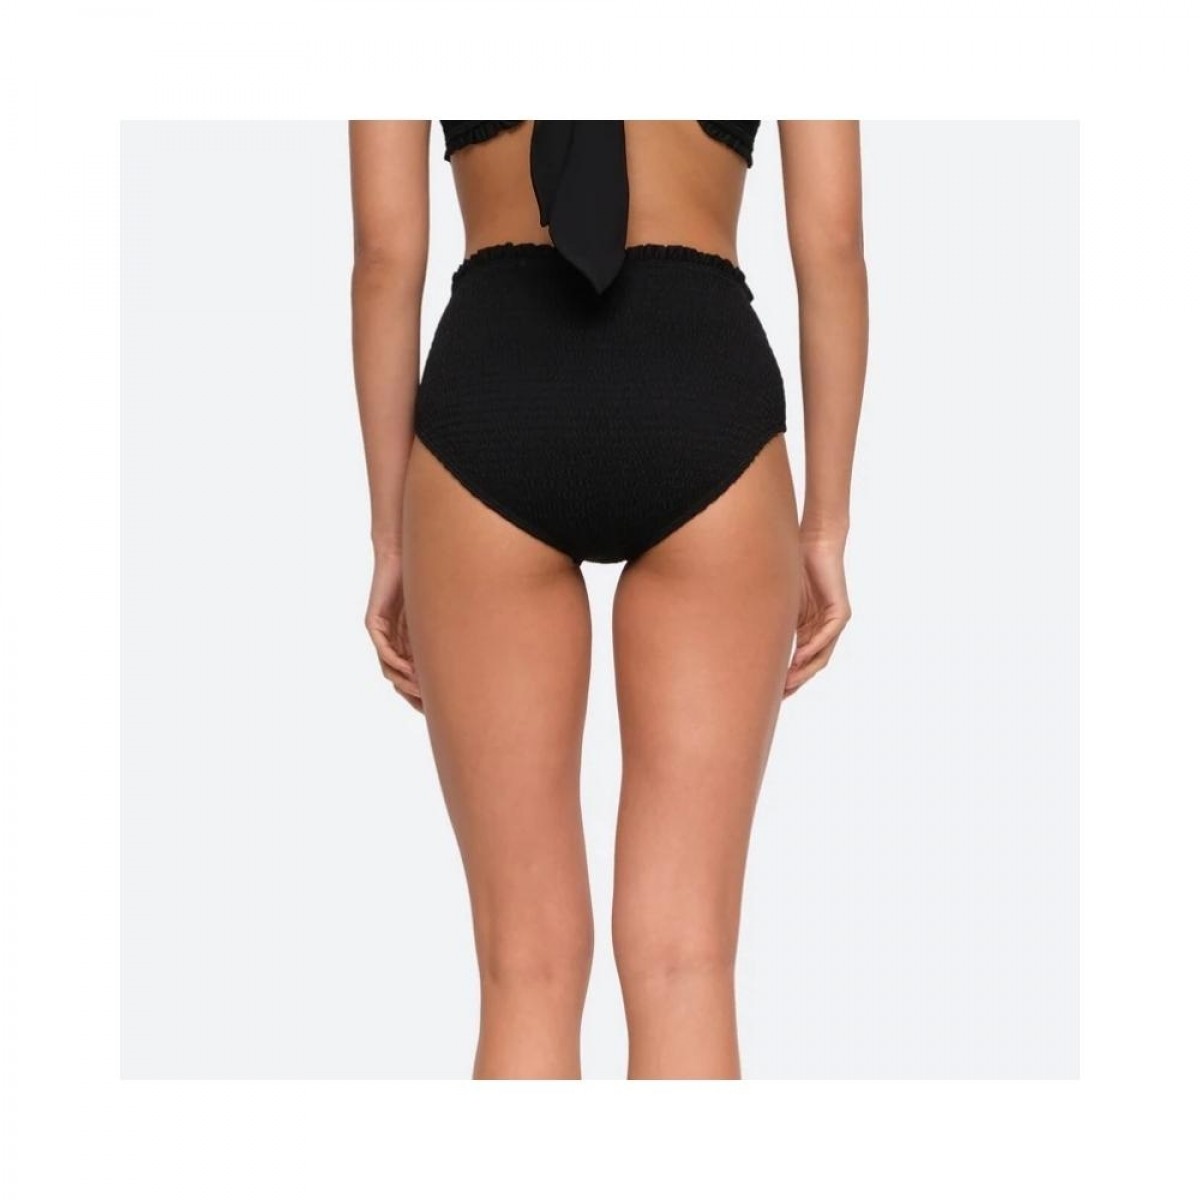 bobby smocked bikini bottom - black - model bag